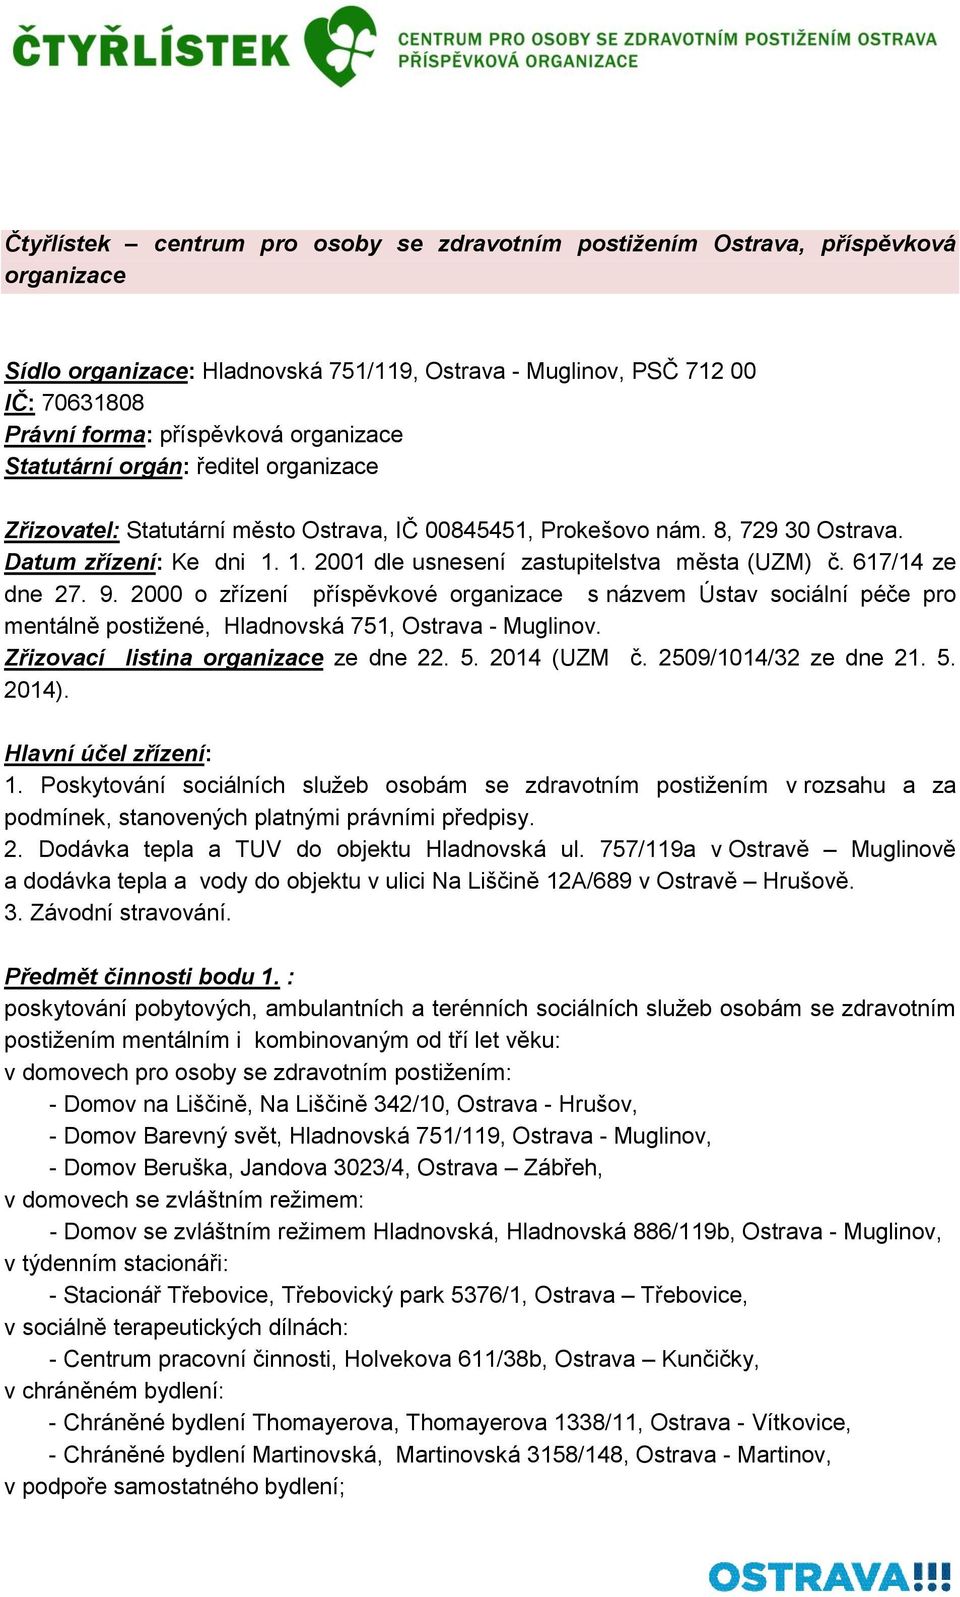 1. 2001 dle usnesení zastupitelstva města (UZM) č. 617/14 ze dne 27. 9. 2000 o zřízení příspěvkové organizace s názvem Ústav sociální péče pro mentálně postižené, Hladnovská 751, Ostrava - Muglinov.